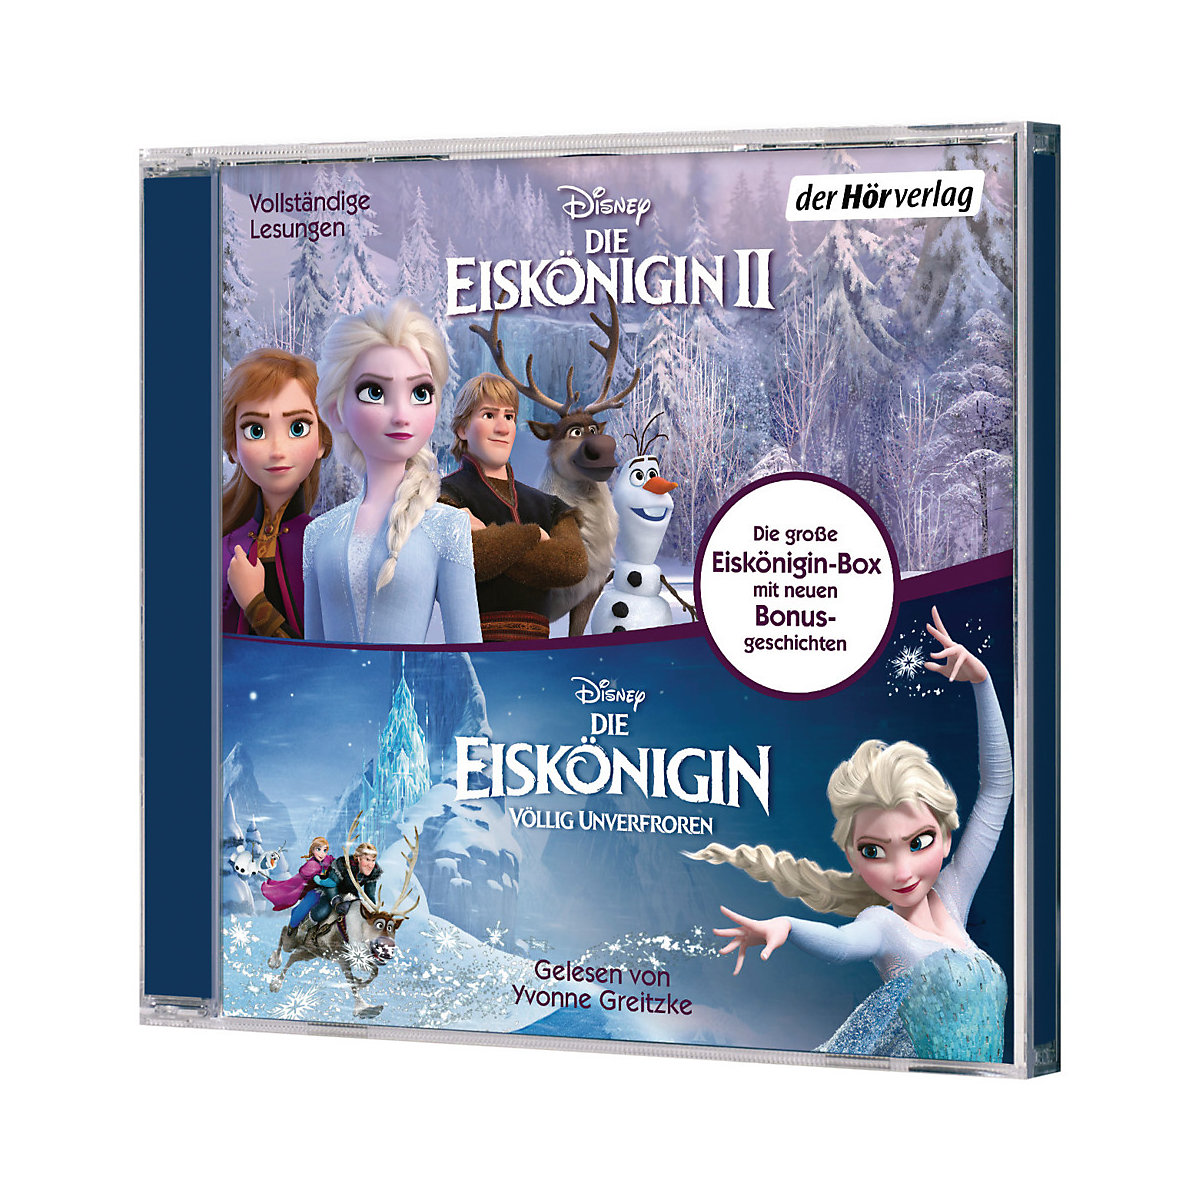 Die Eiskönigin völlig unverfroren & Die Eiskönigin 2 1 Audio-CD